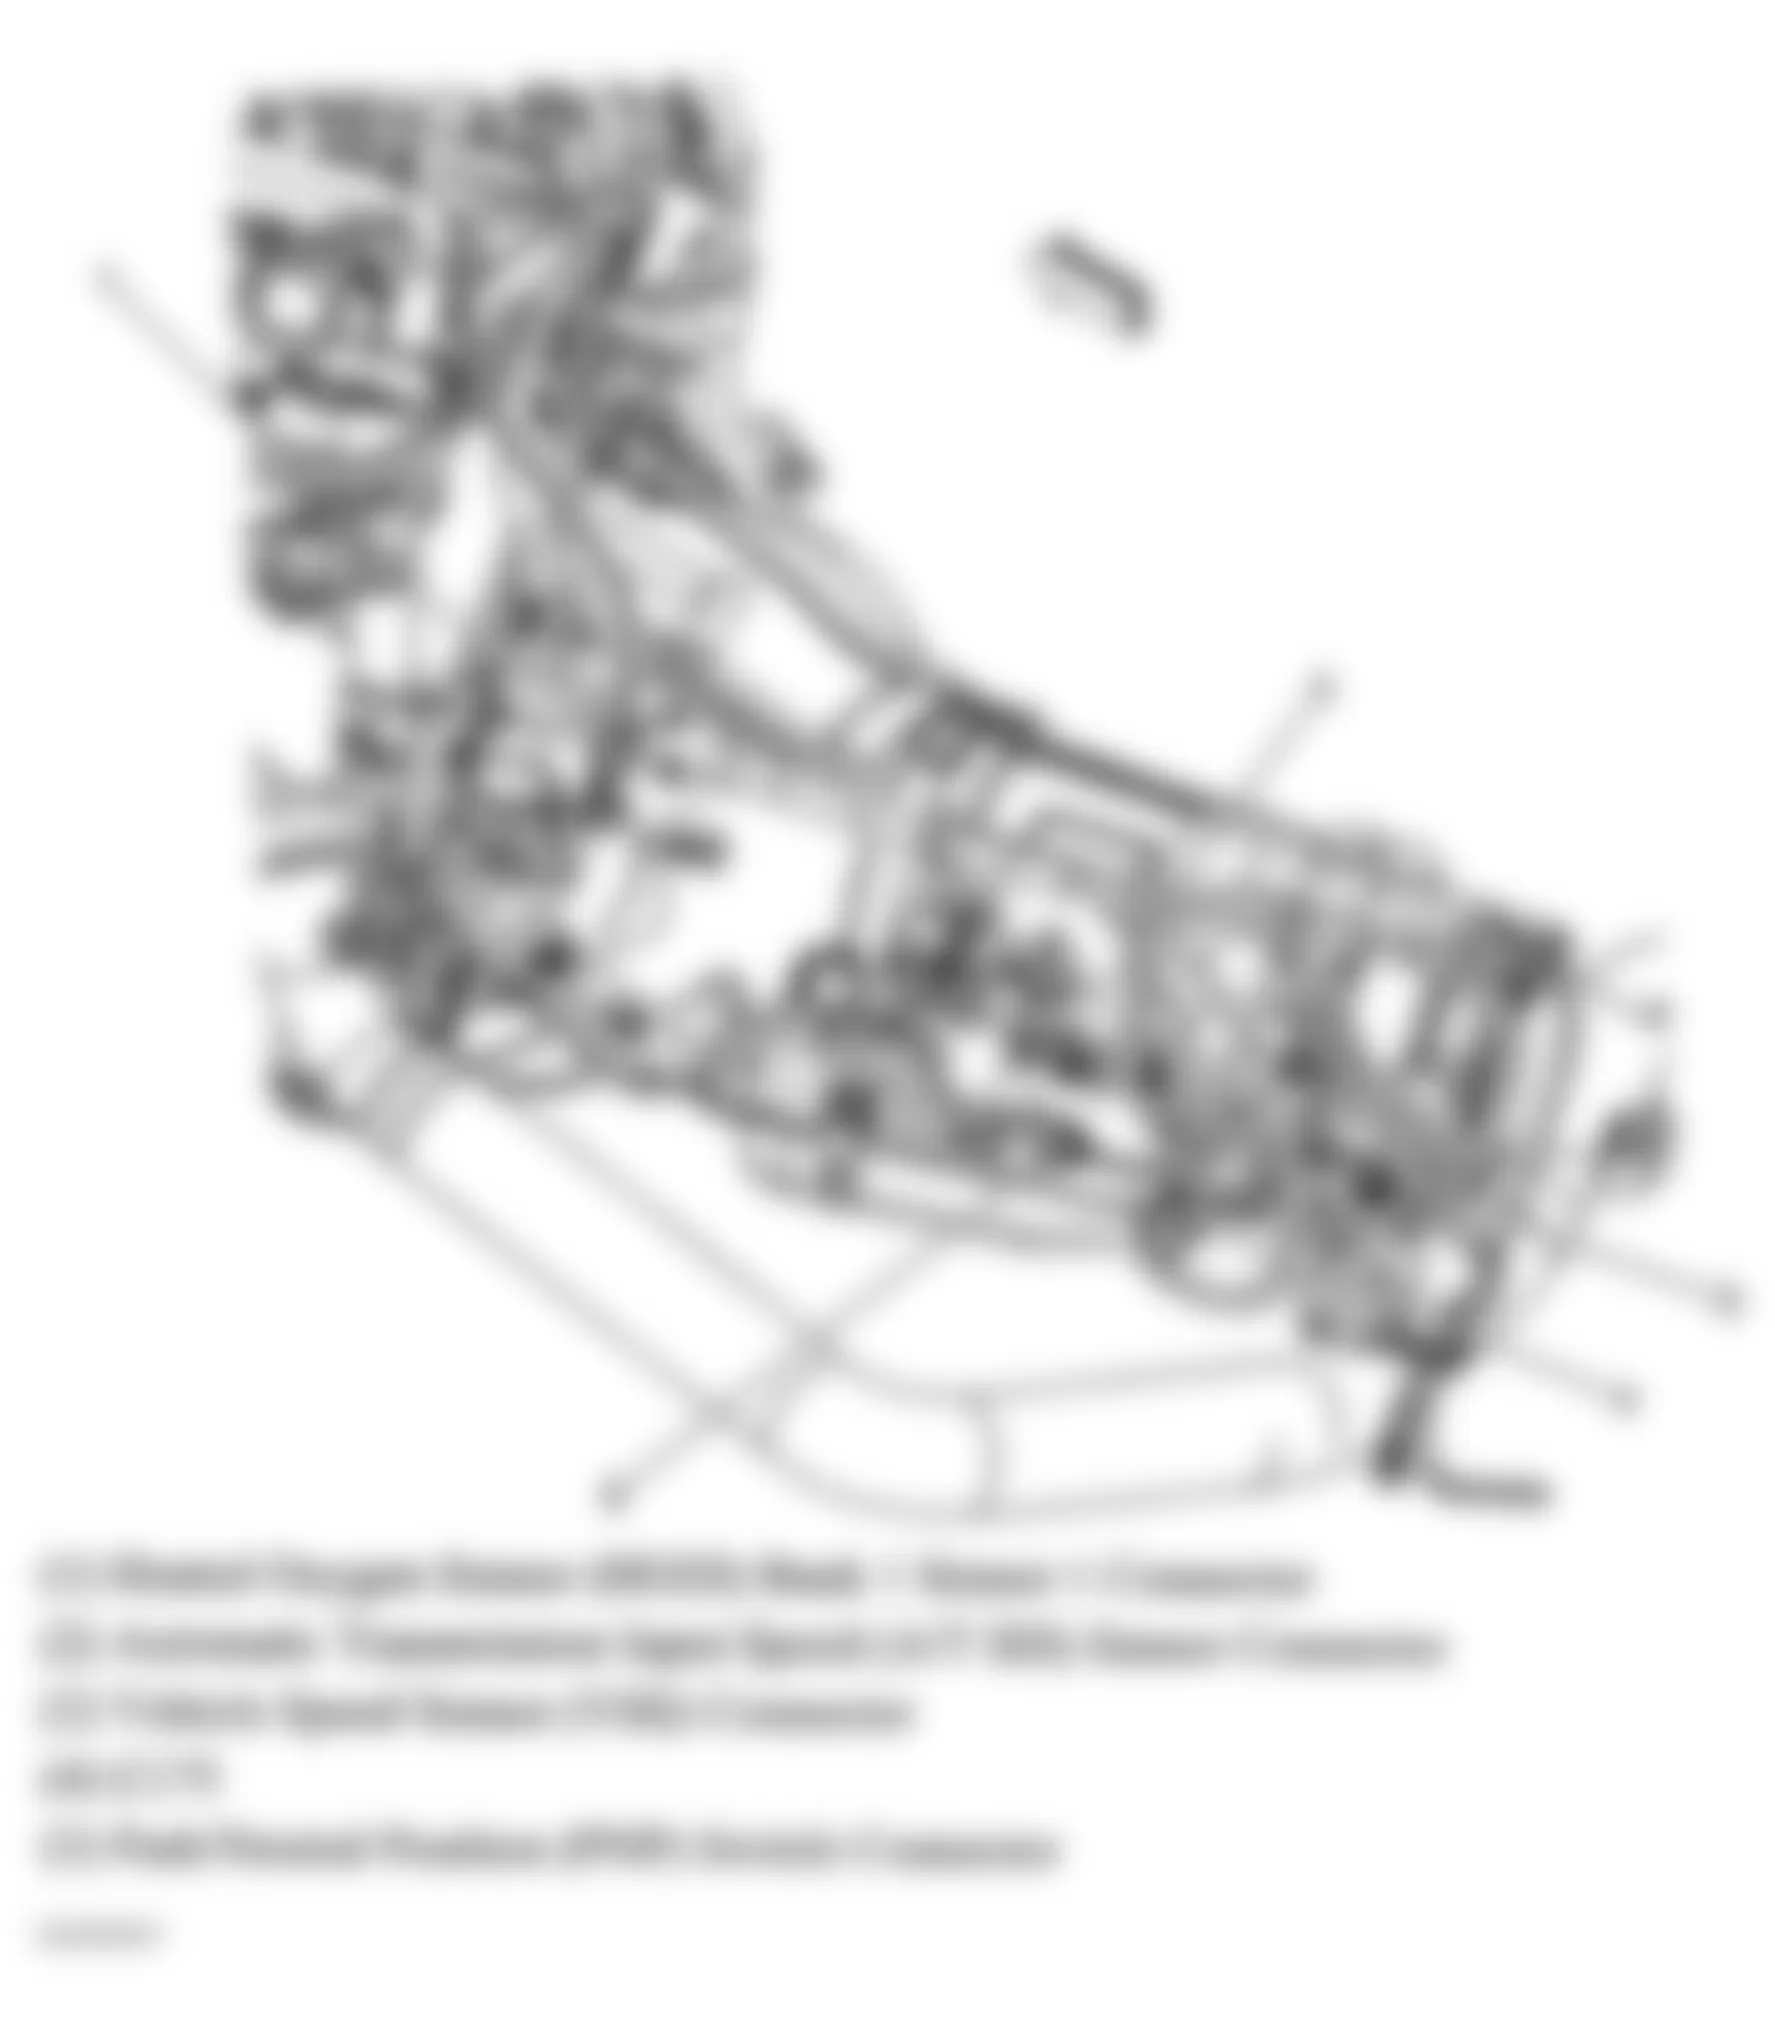 GMC Savana Camper Special G3500 2005 - Component Locations -  Rear Of Engine & Transmission (4.8L VIN V & 6.0L VIN U)